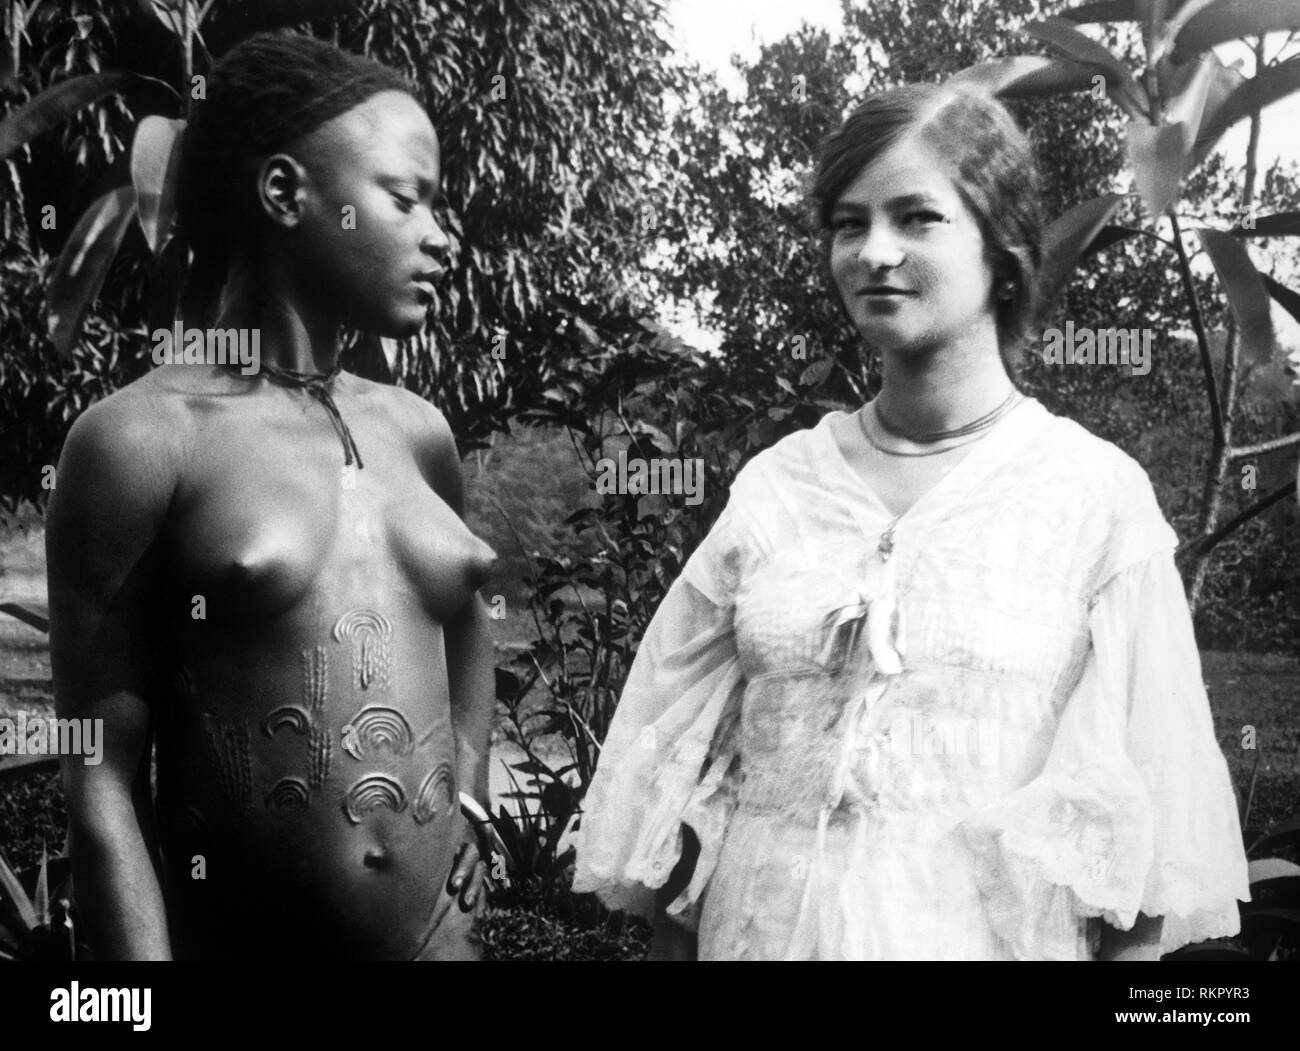 Afrika, Kongo Belgier, zwei ethnischen Gruppen im Vergleich, 1910 Stockfoto